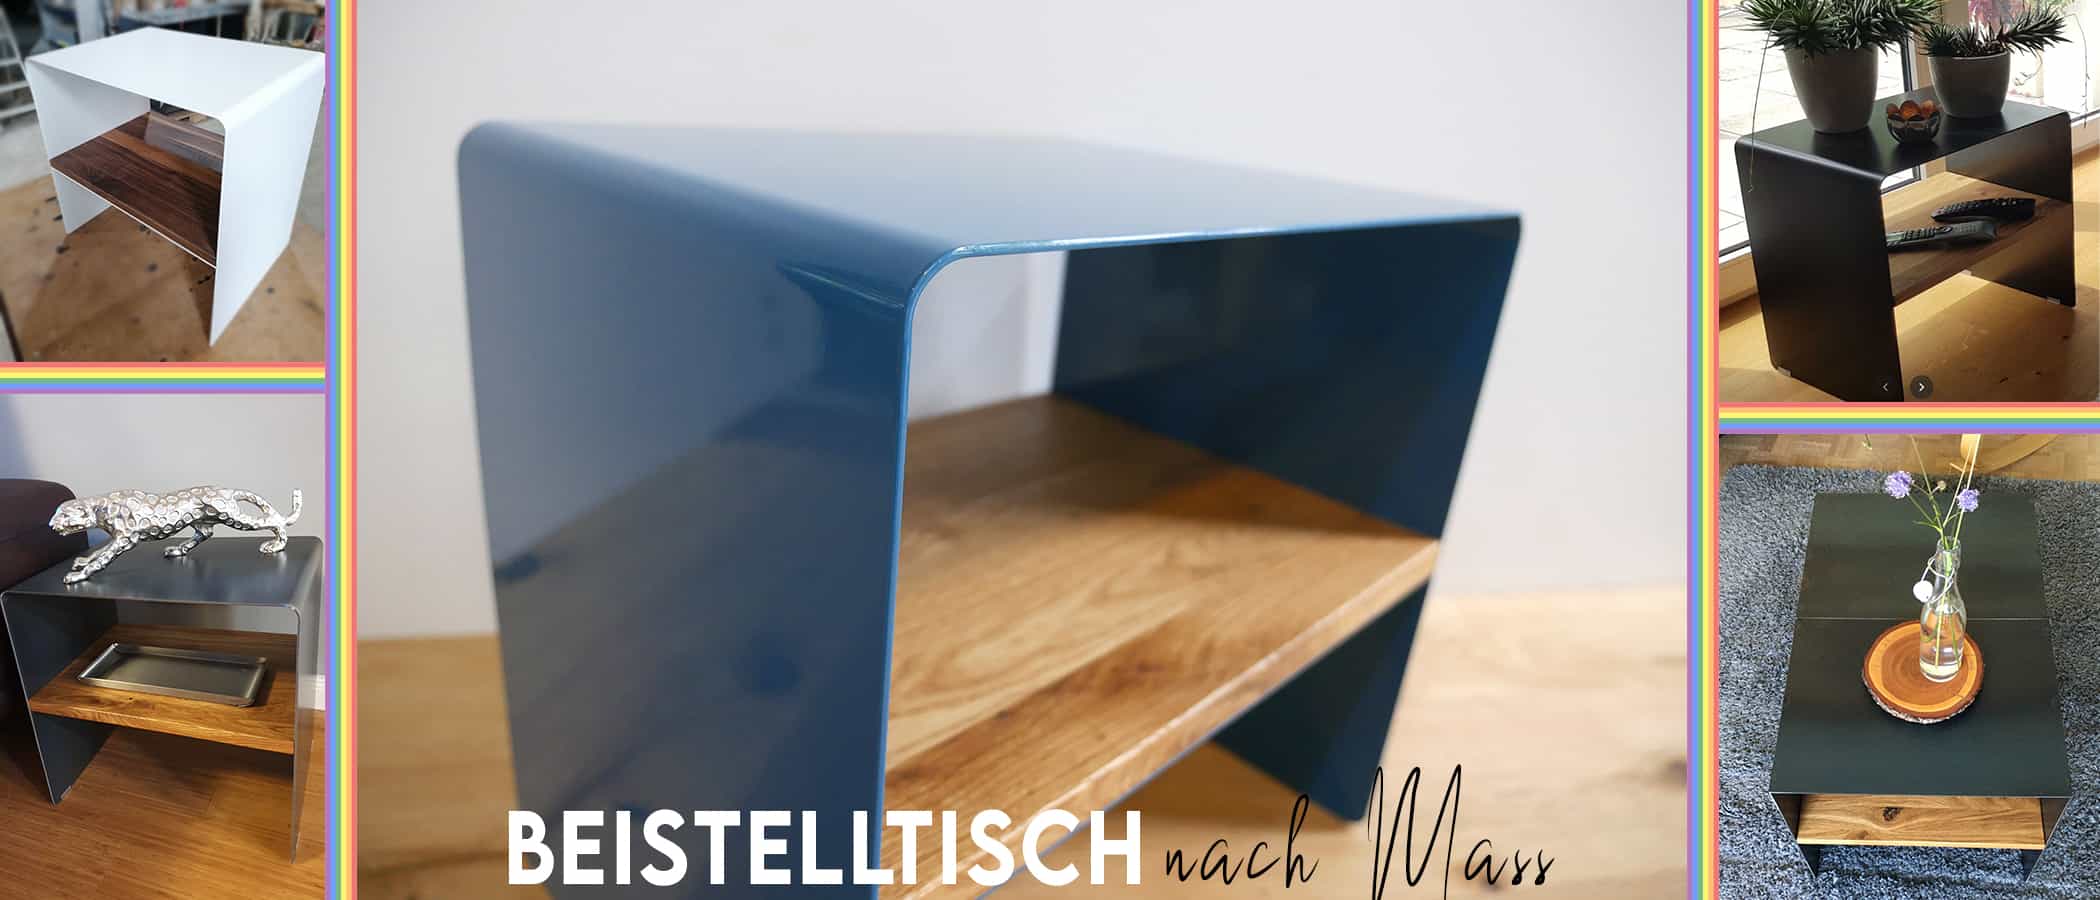 beistelltisch-nach-mass-holz-metall-weiss-rund-schwarz-2er-set-eiche-hoch-klein-rollen-design-schublade-sofa-couch-modern-schmal-klein-grau-wohnzimmer-individuell-stahlzart